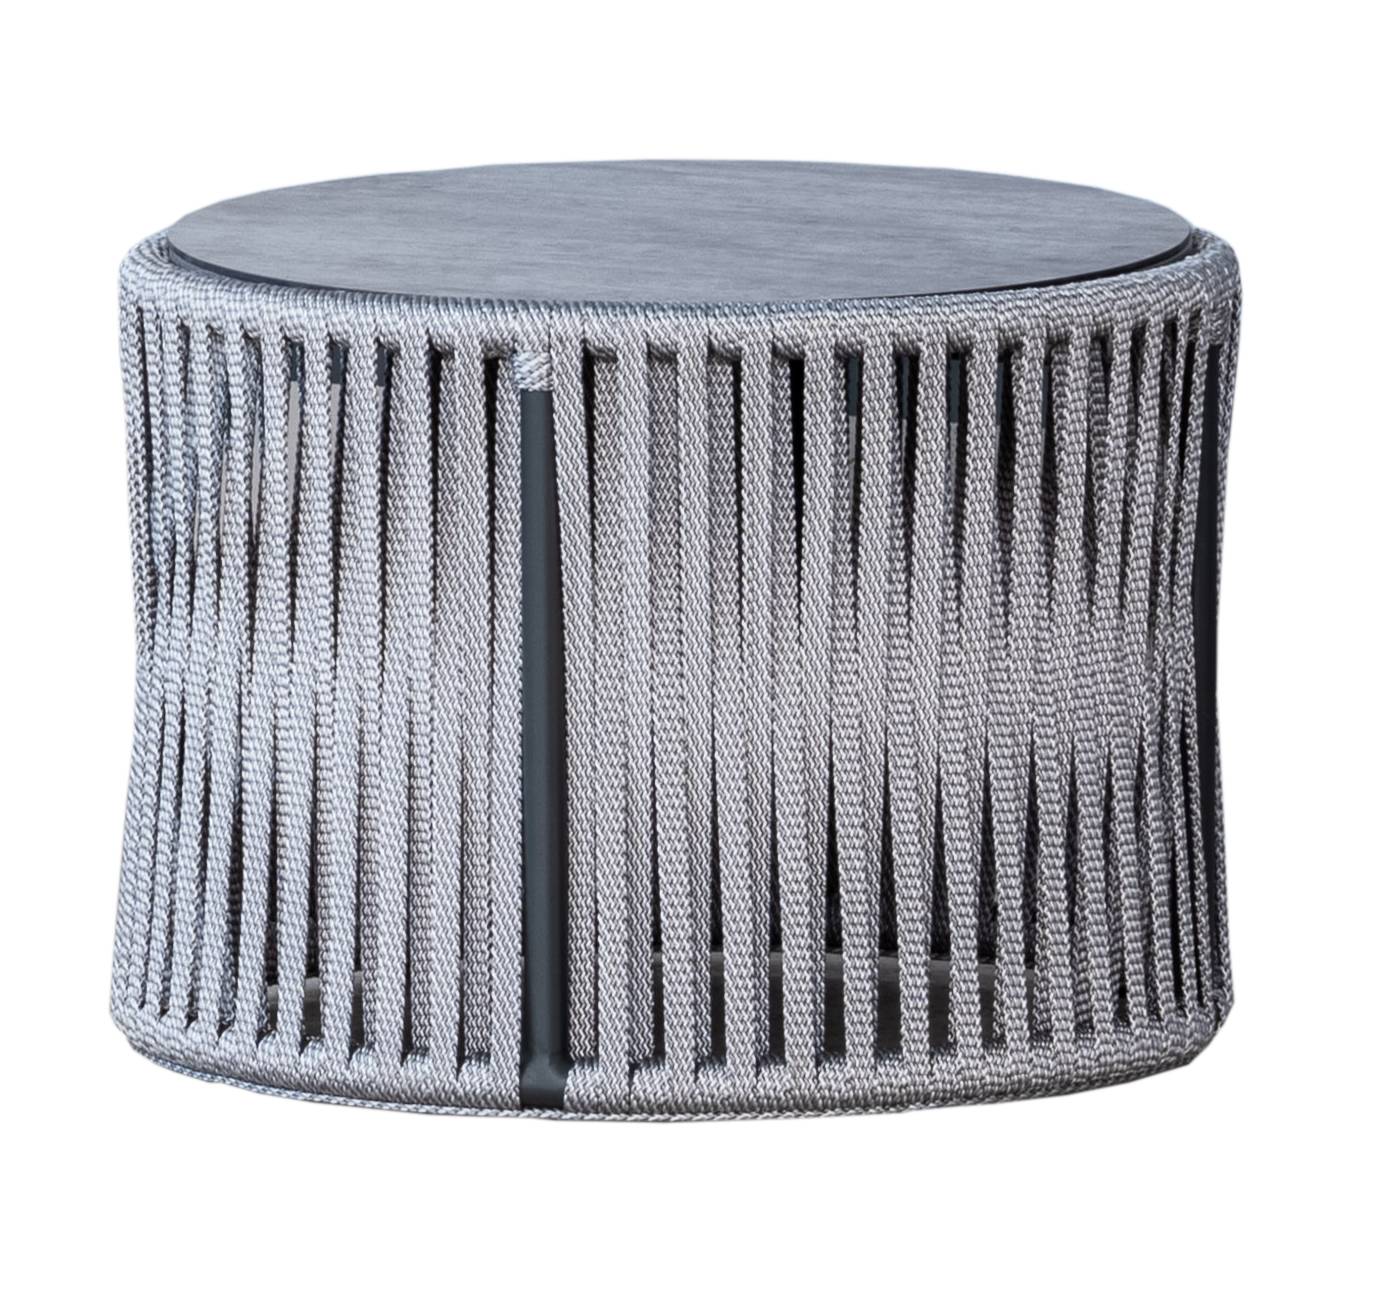 Set Cuerda Yina-10 - Conjunto aluminio color antracita y cuerda color gris: 1 sofá de 3 plazas + 2 sillones + 1 mesa de centro + 2 taburetes.